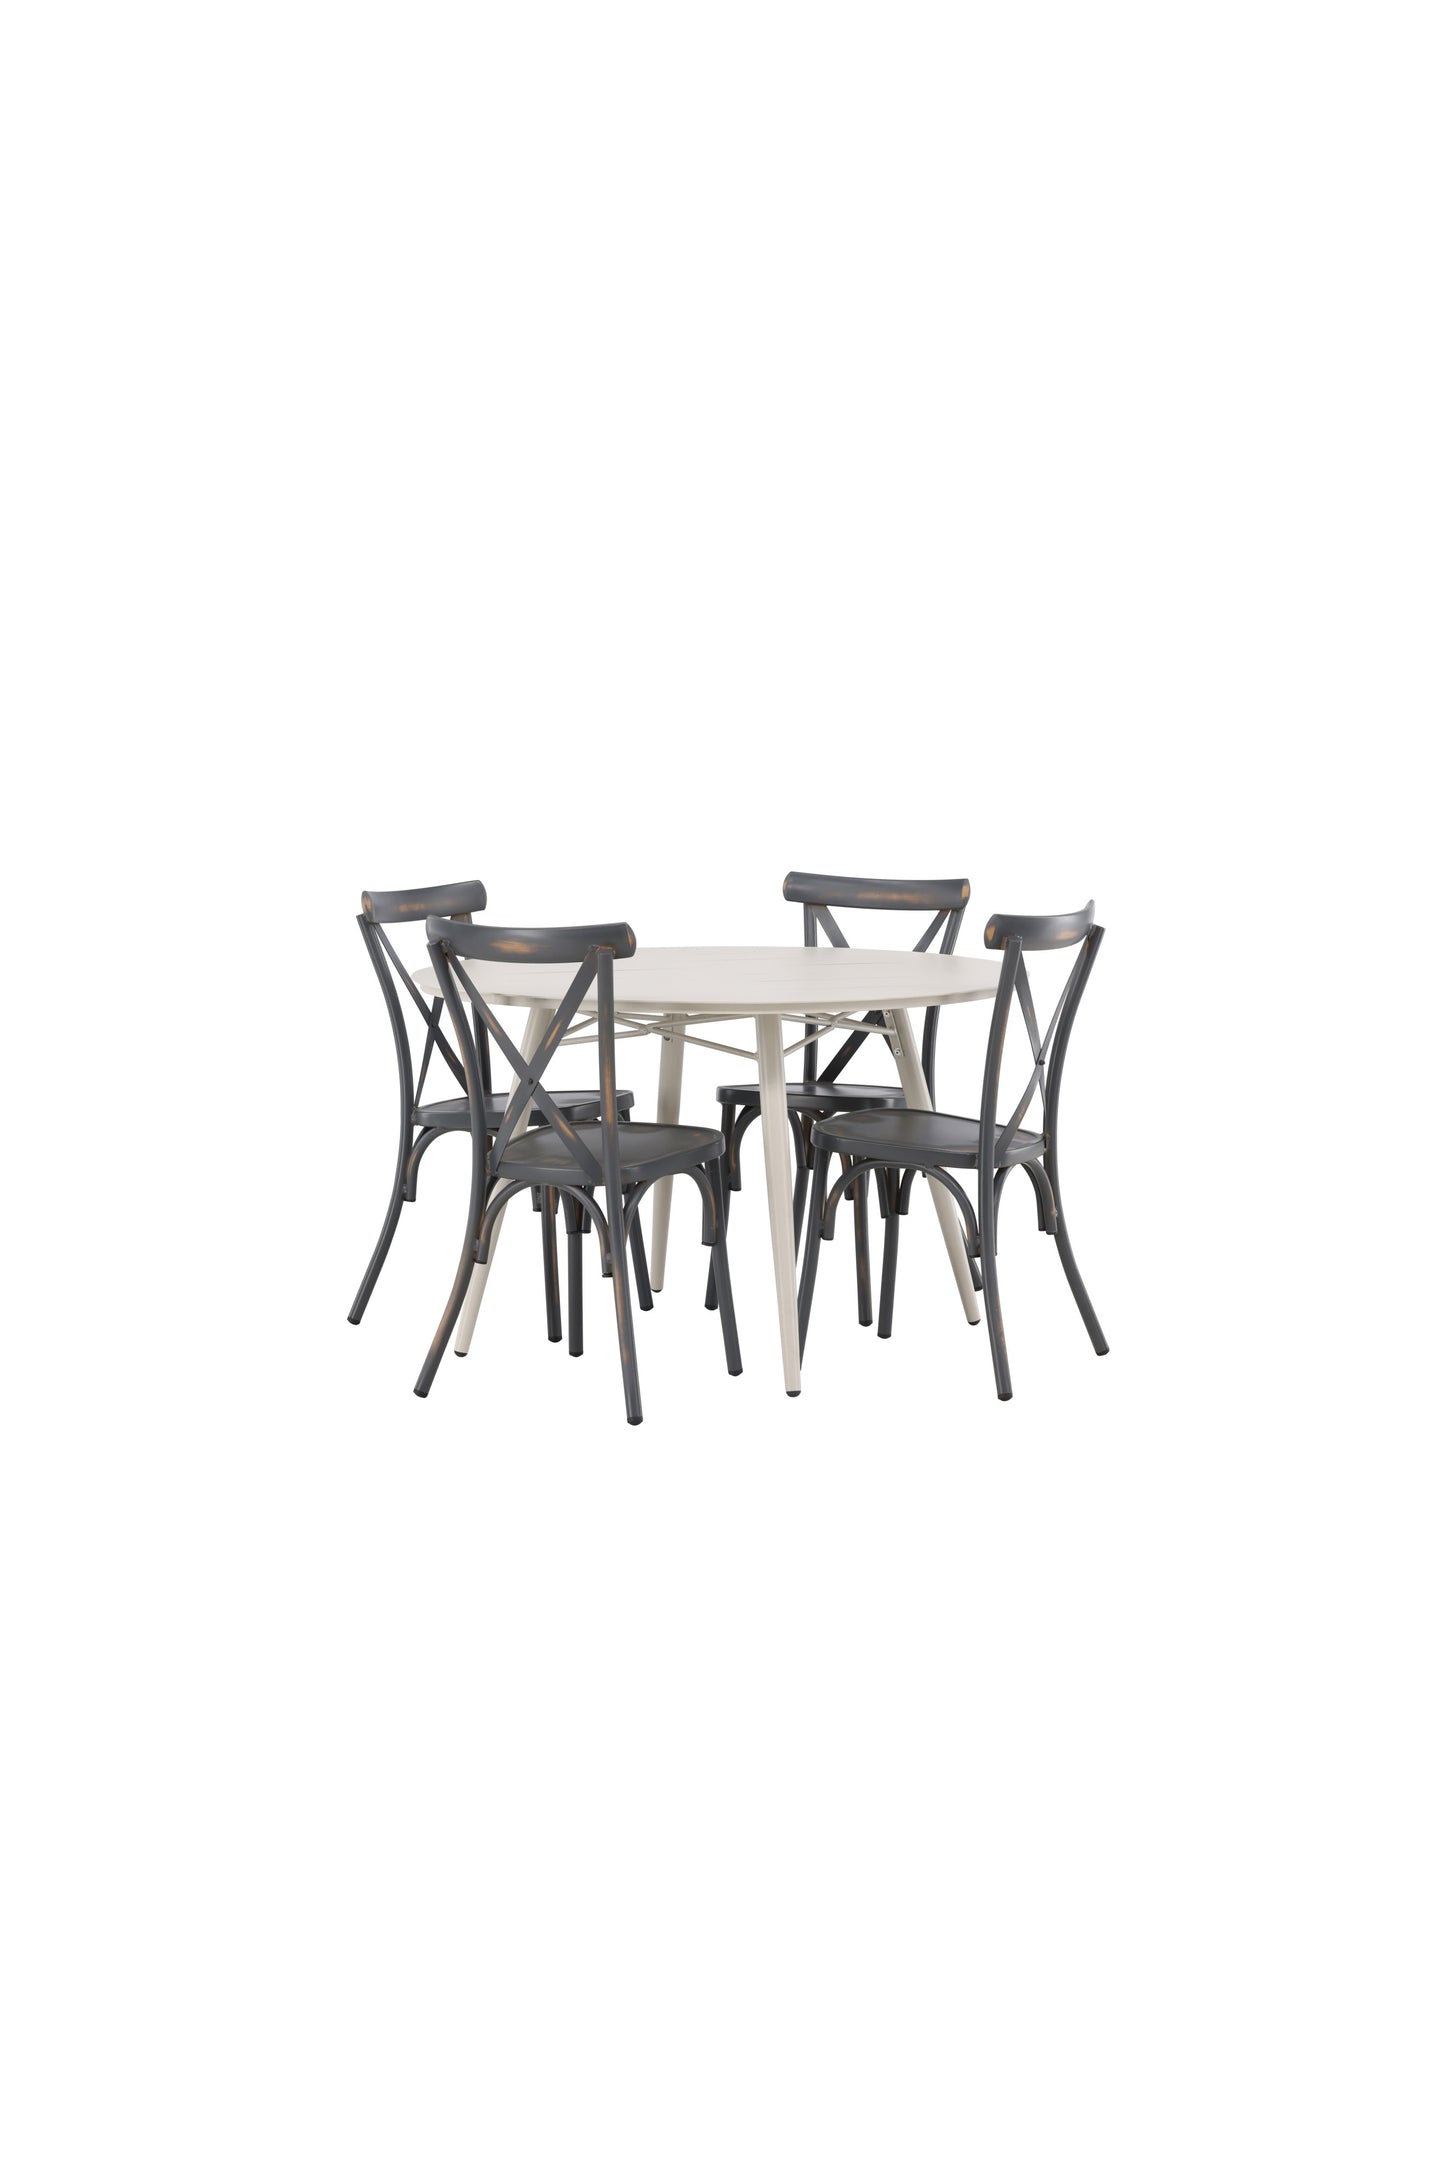 Lia - Spisebord, Beige - Rundt 120 cm + Tablas stol Aluminium - Sort